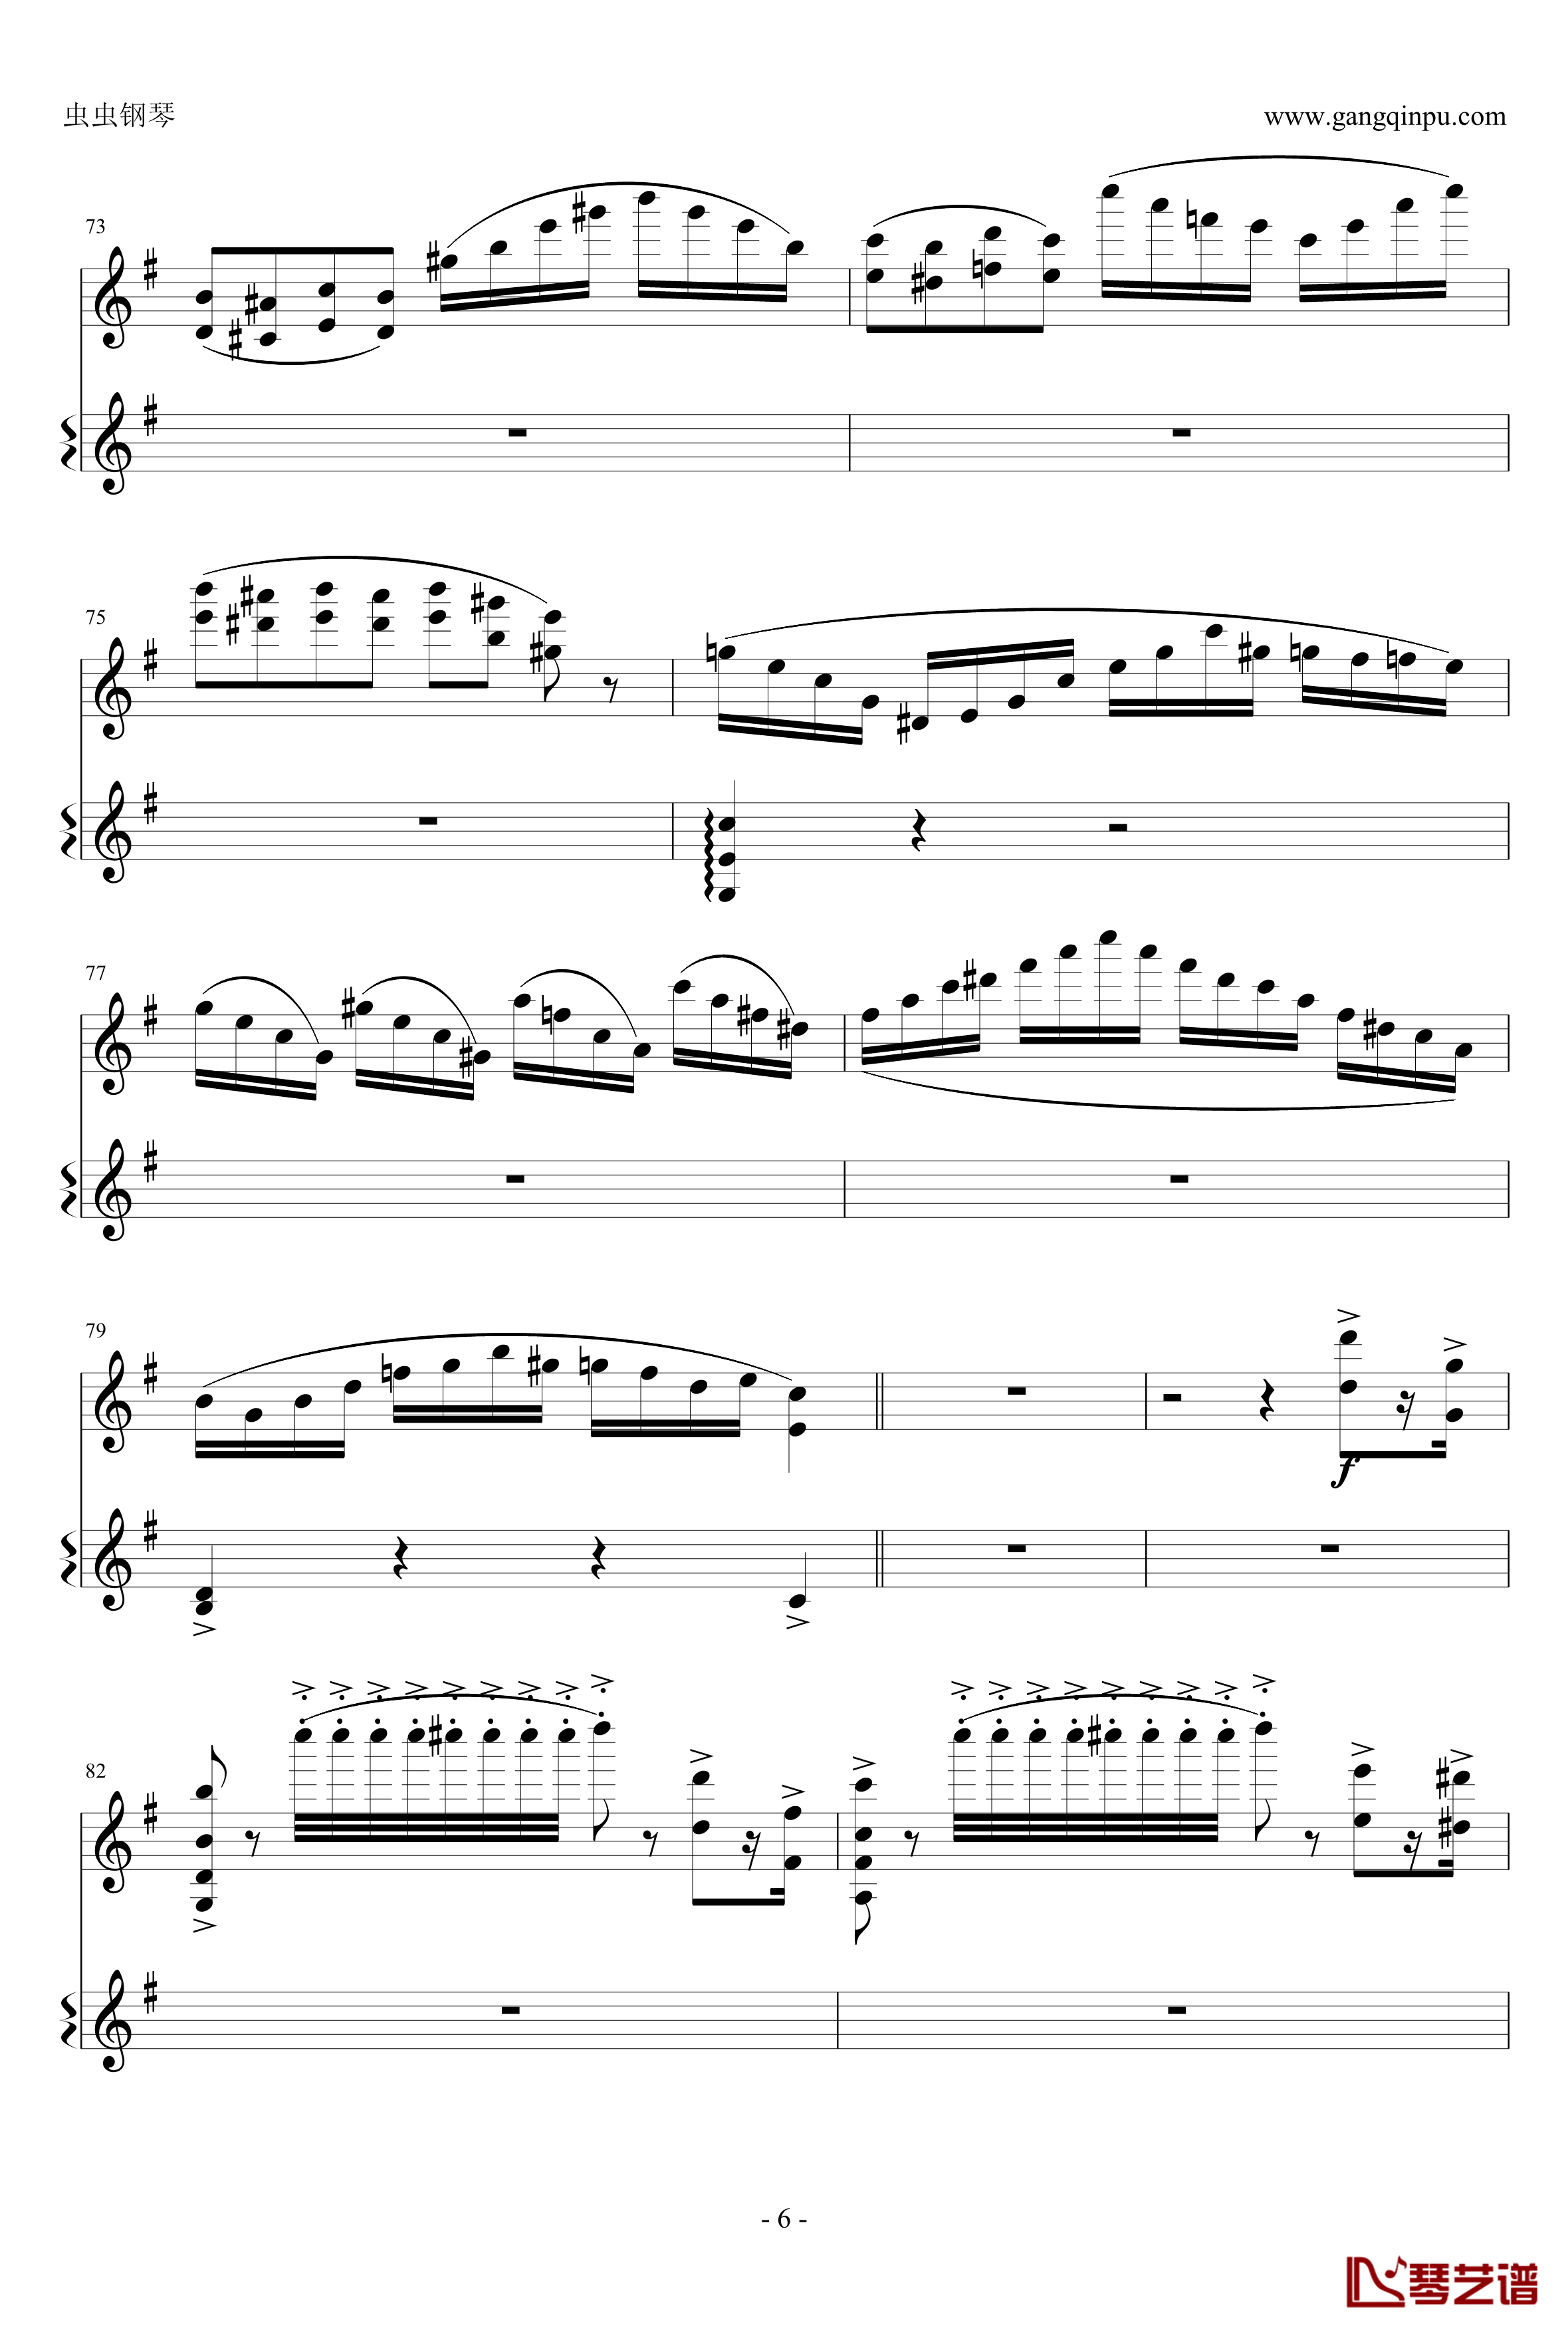 意大利国歌钢琴谱-变奏曲修改版-DXF6